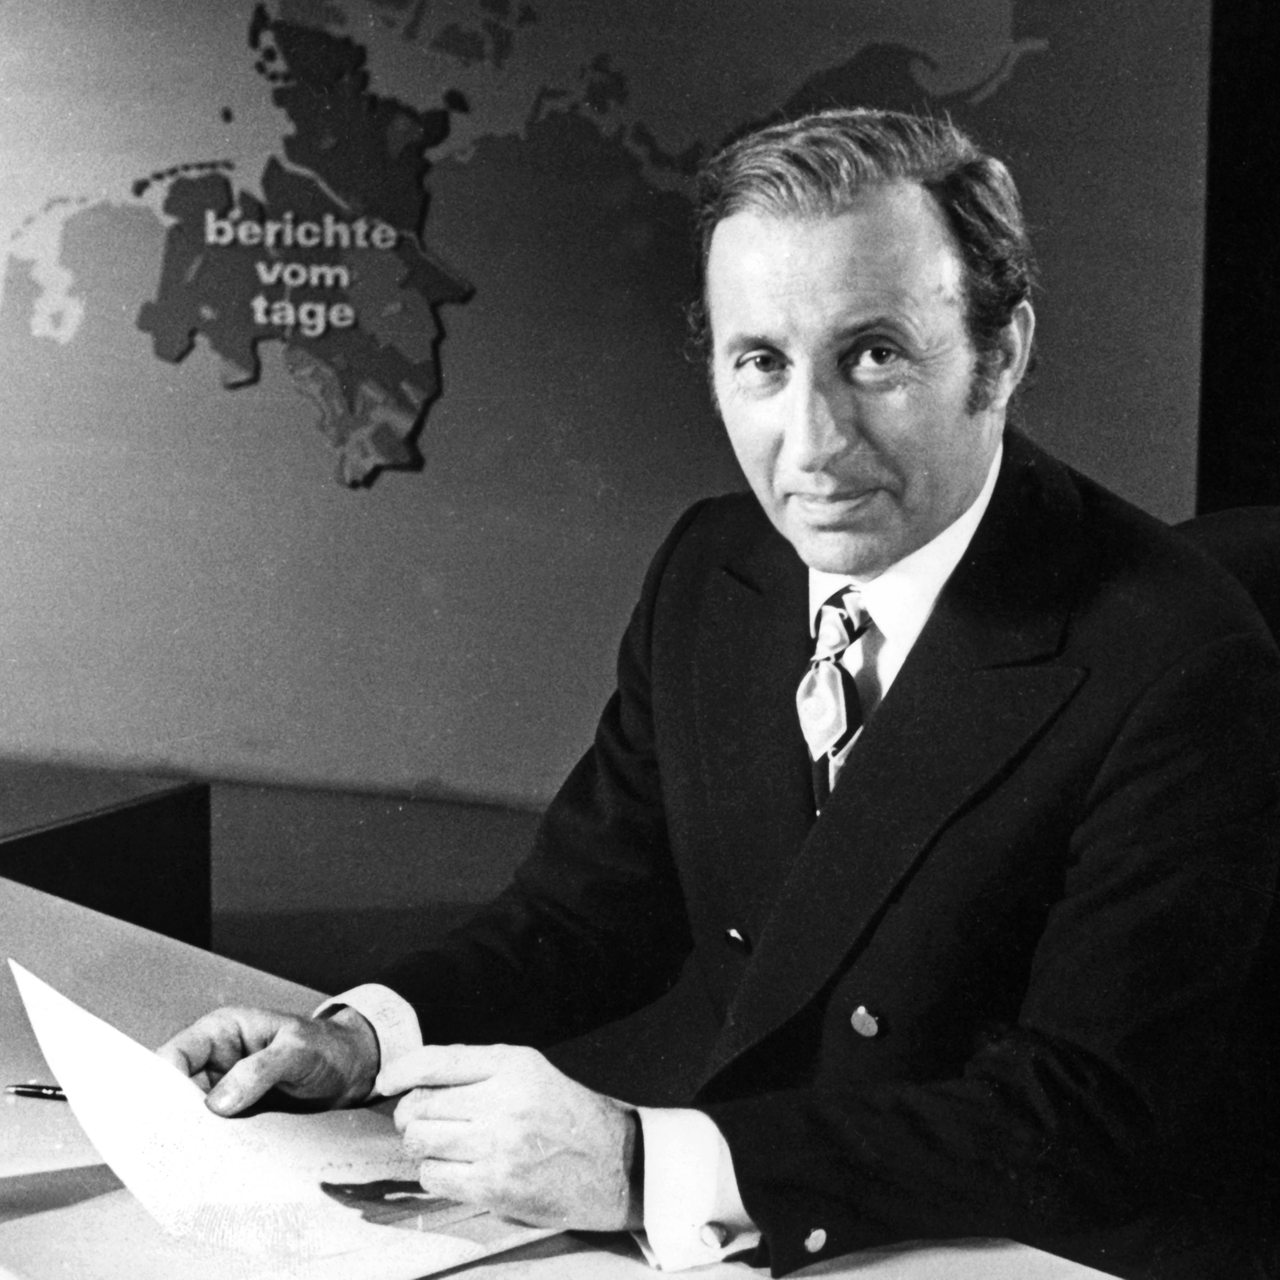 Der Chefsprecher der Tagesschau in der ARD, Karl-Heinz Köpcke, während einer Nachrichtensendung der Tagesschau in der ARD im Fernsehstudio in Hamburg-Lokstedt am 22.02.1971. 